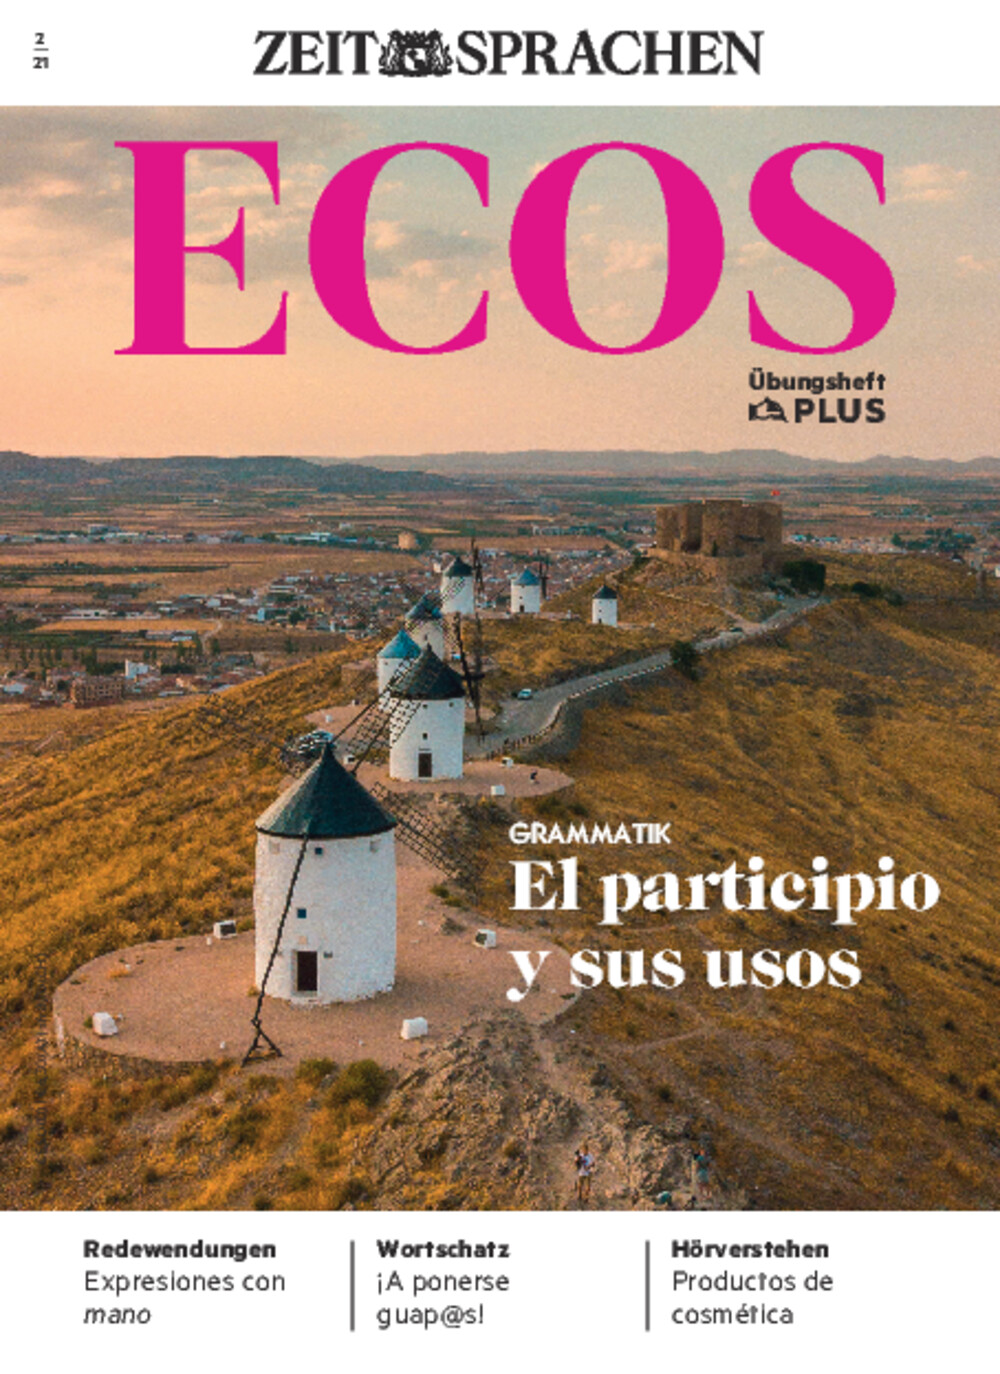 Ecos PLUS ePaper 02/2021